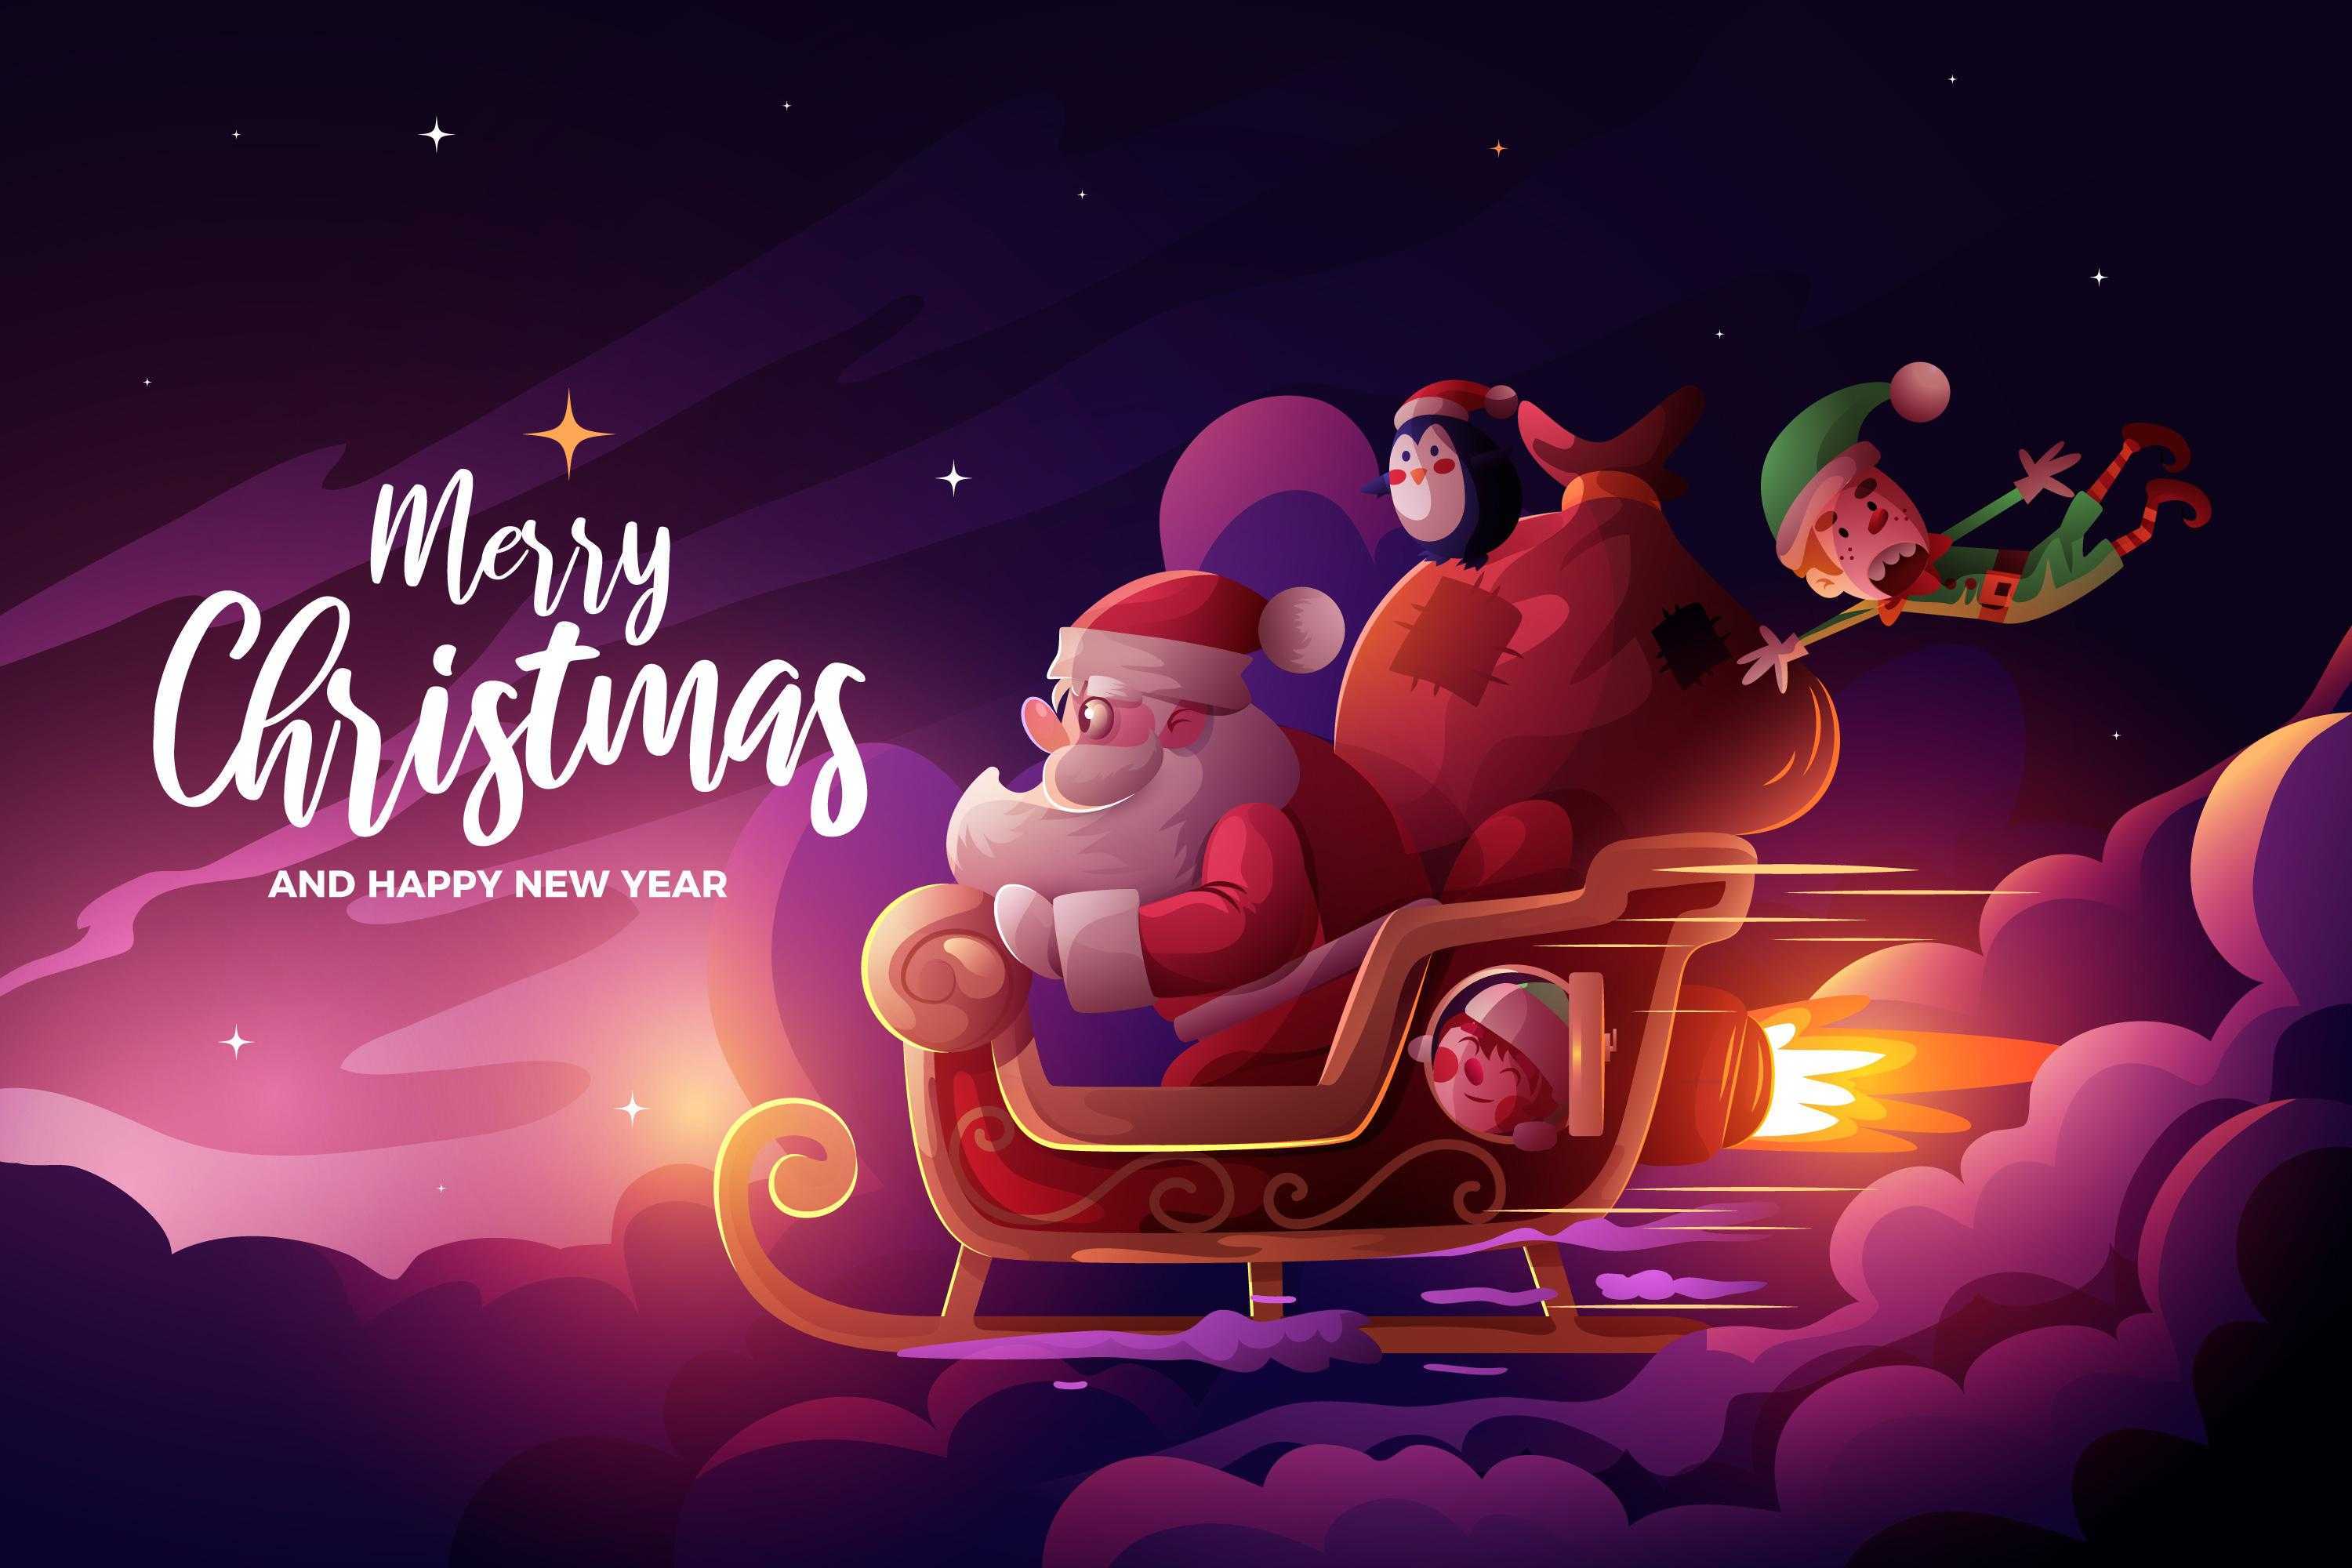 christmas greetings with animated santa